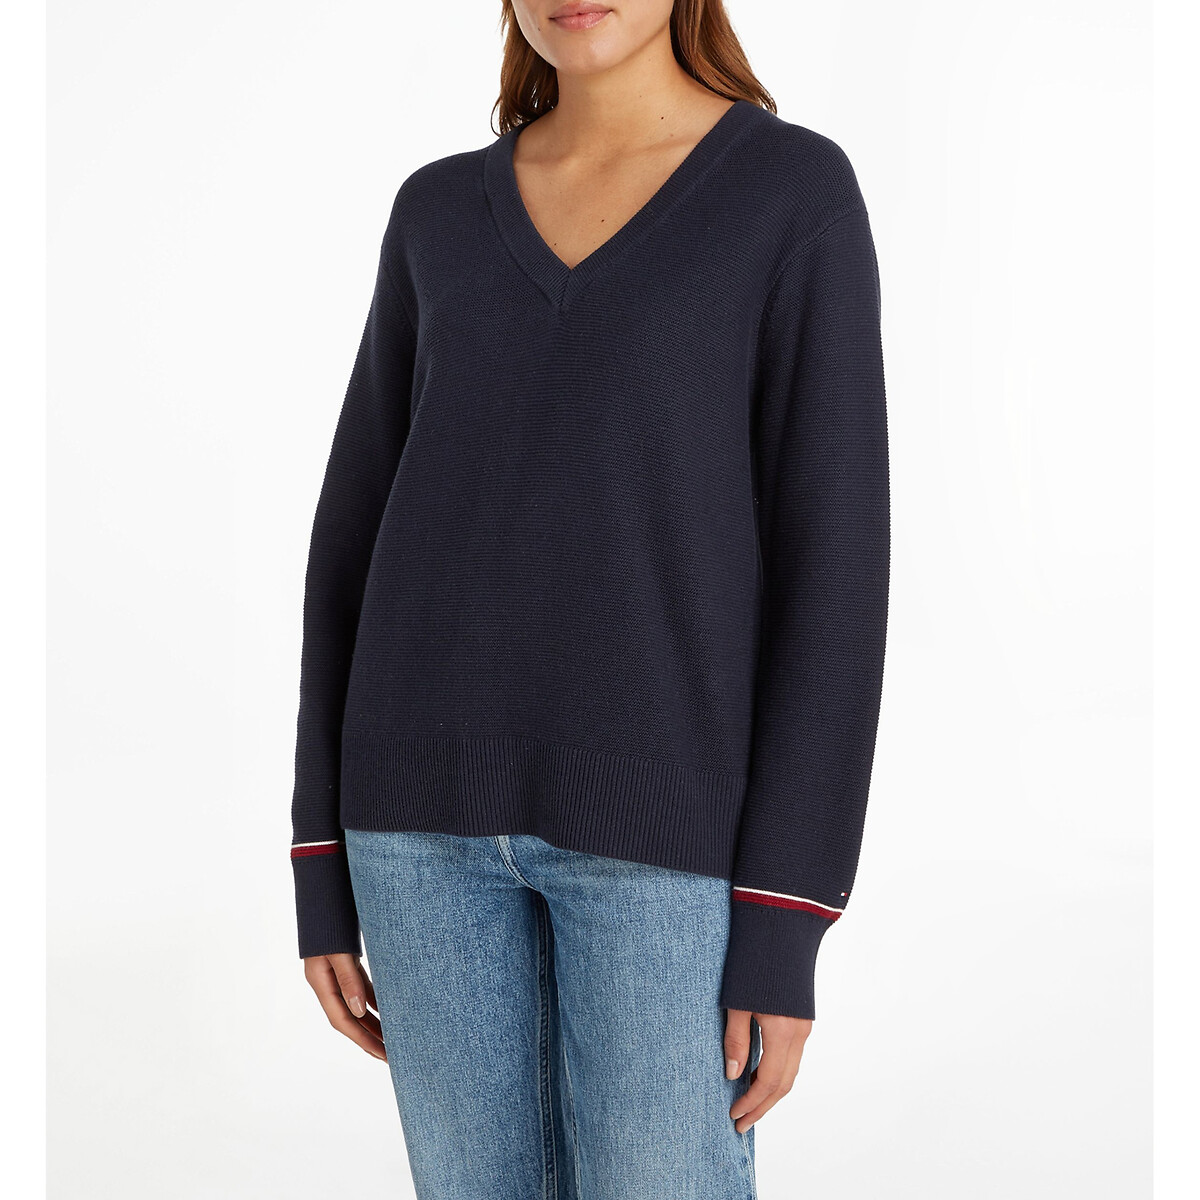 Pullover mit V-Ausschnitt, 100% Baumwolle von Tommy Hilfiger